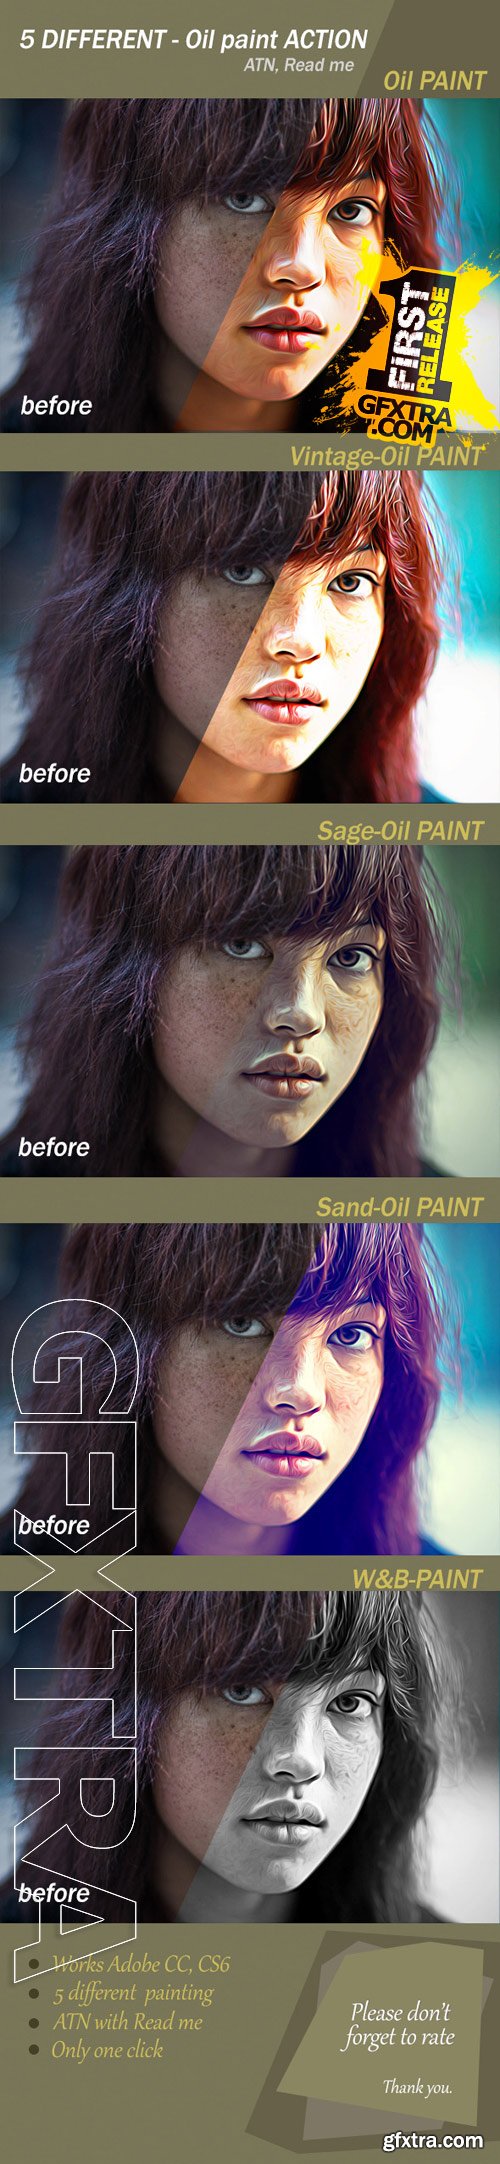 GraphicRiver - Oil Paint Action 9412573